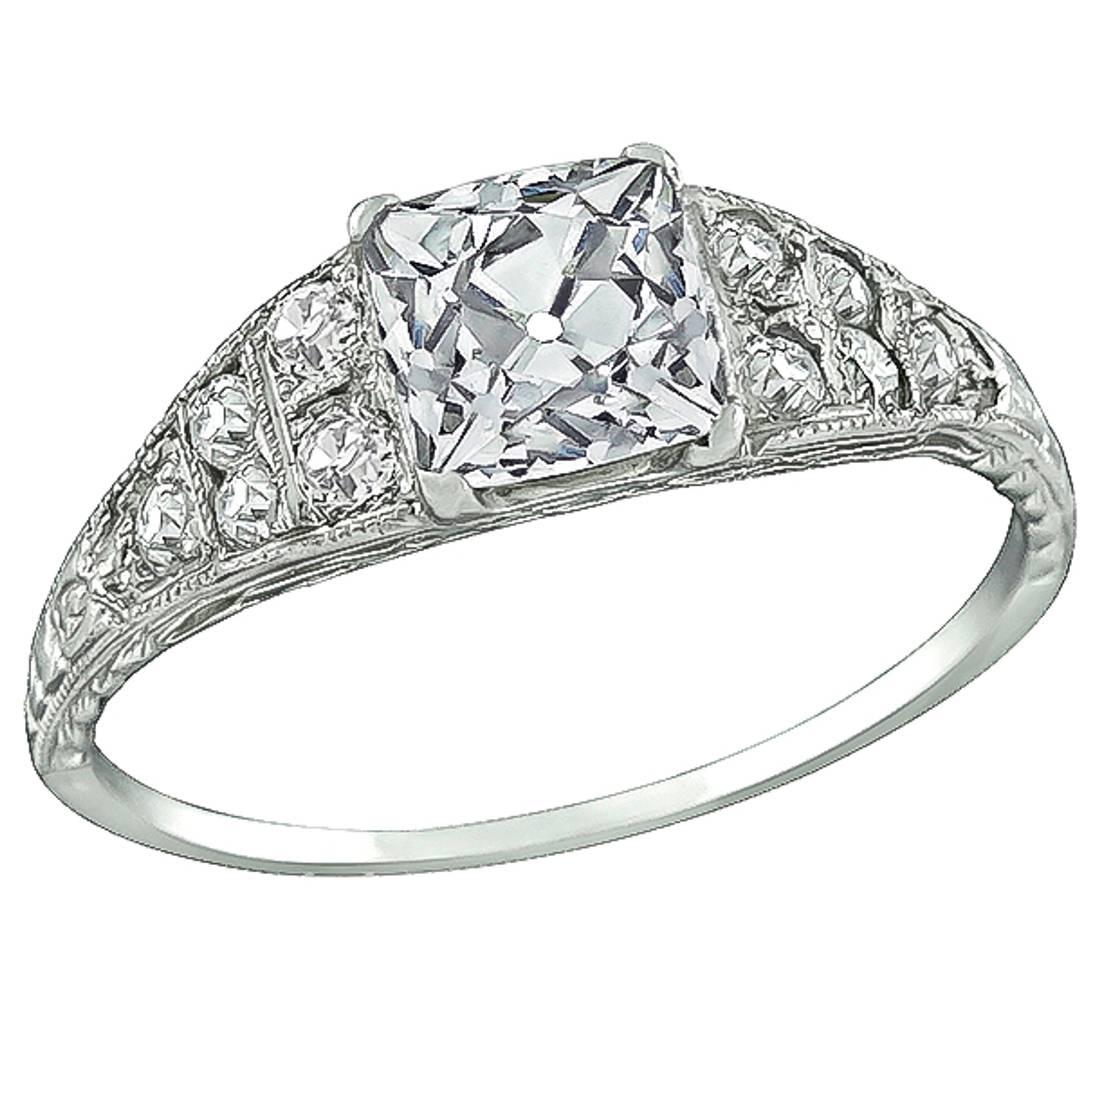 1.30 Carat GIA Certified Square Brilliant Cut Diamond Platinum Engagement Ring